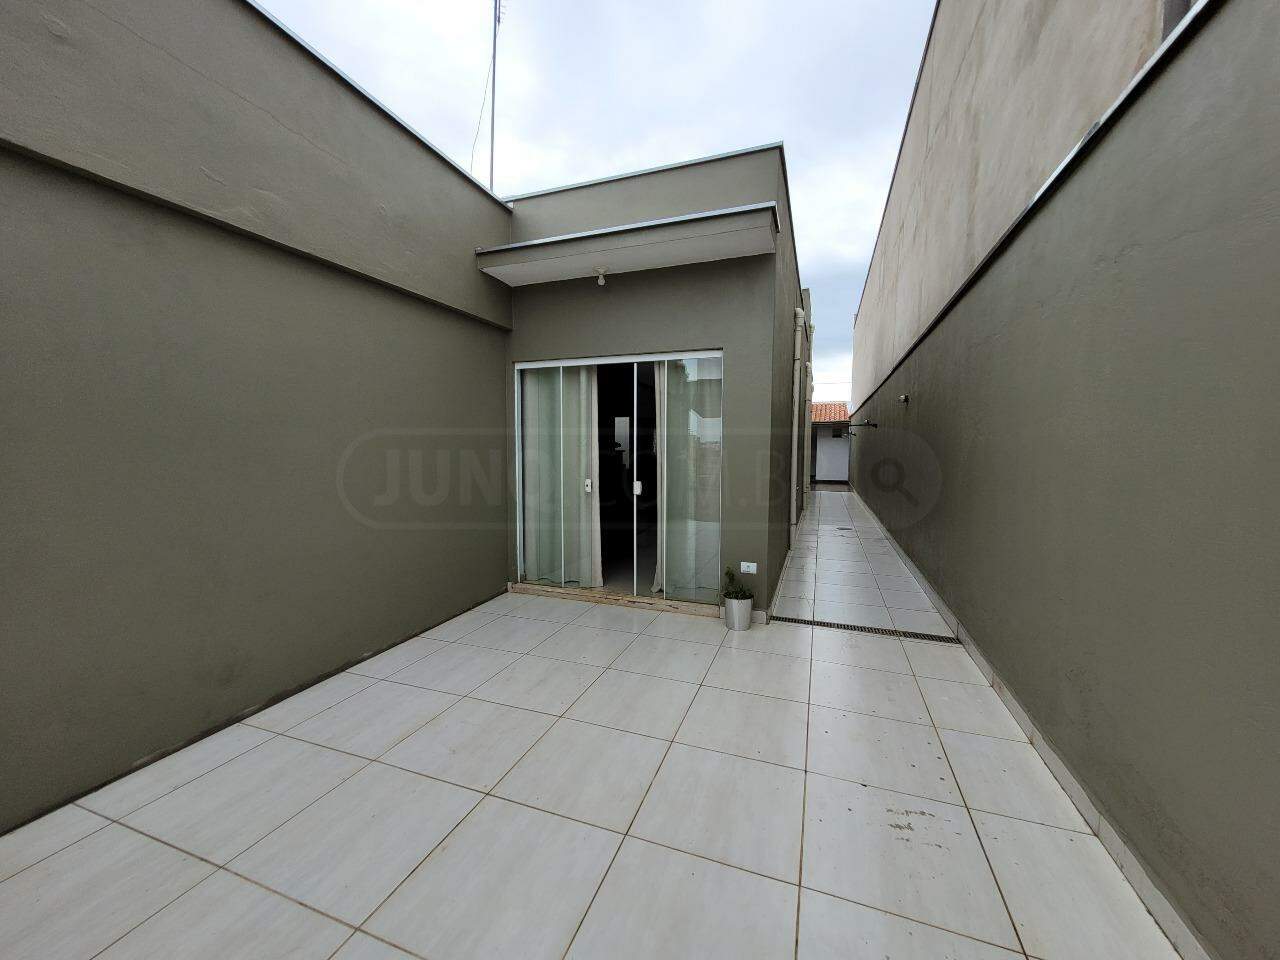 Casa para alugar, 2 quartos, 1 vaga, no bairro Água Branca em Piracicaba - SP